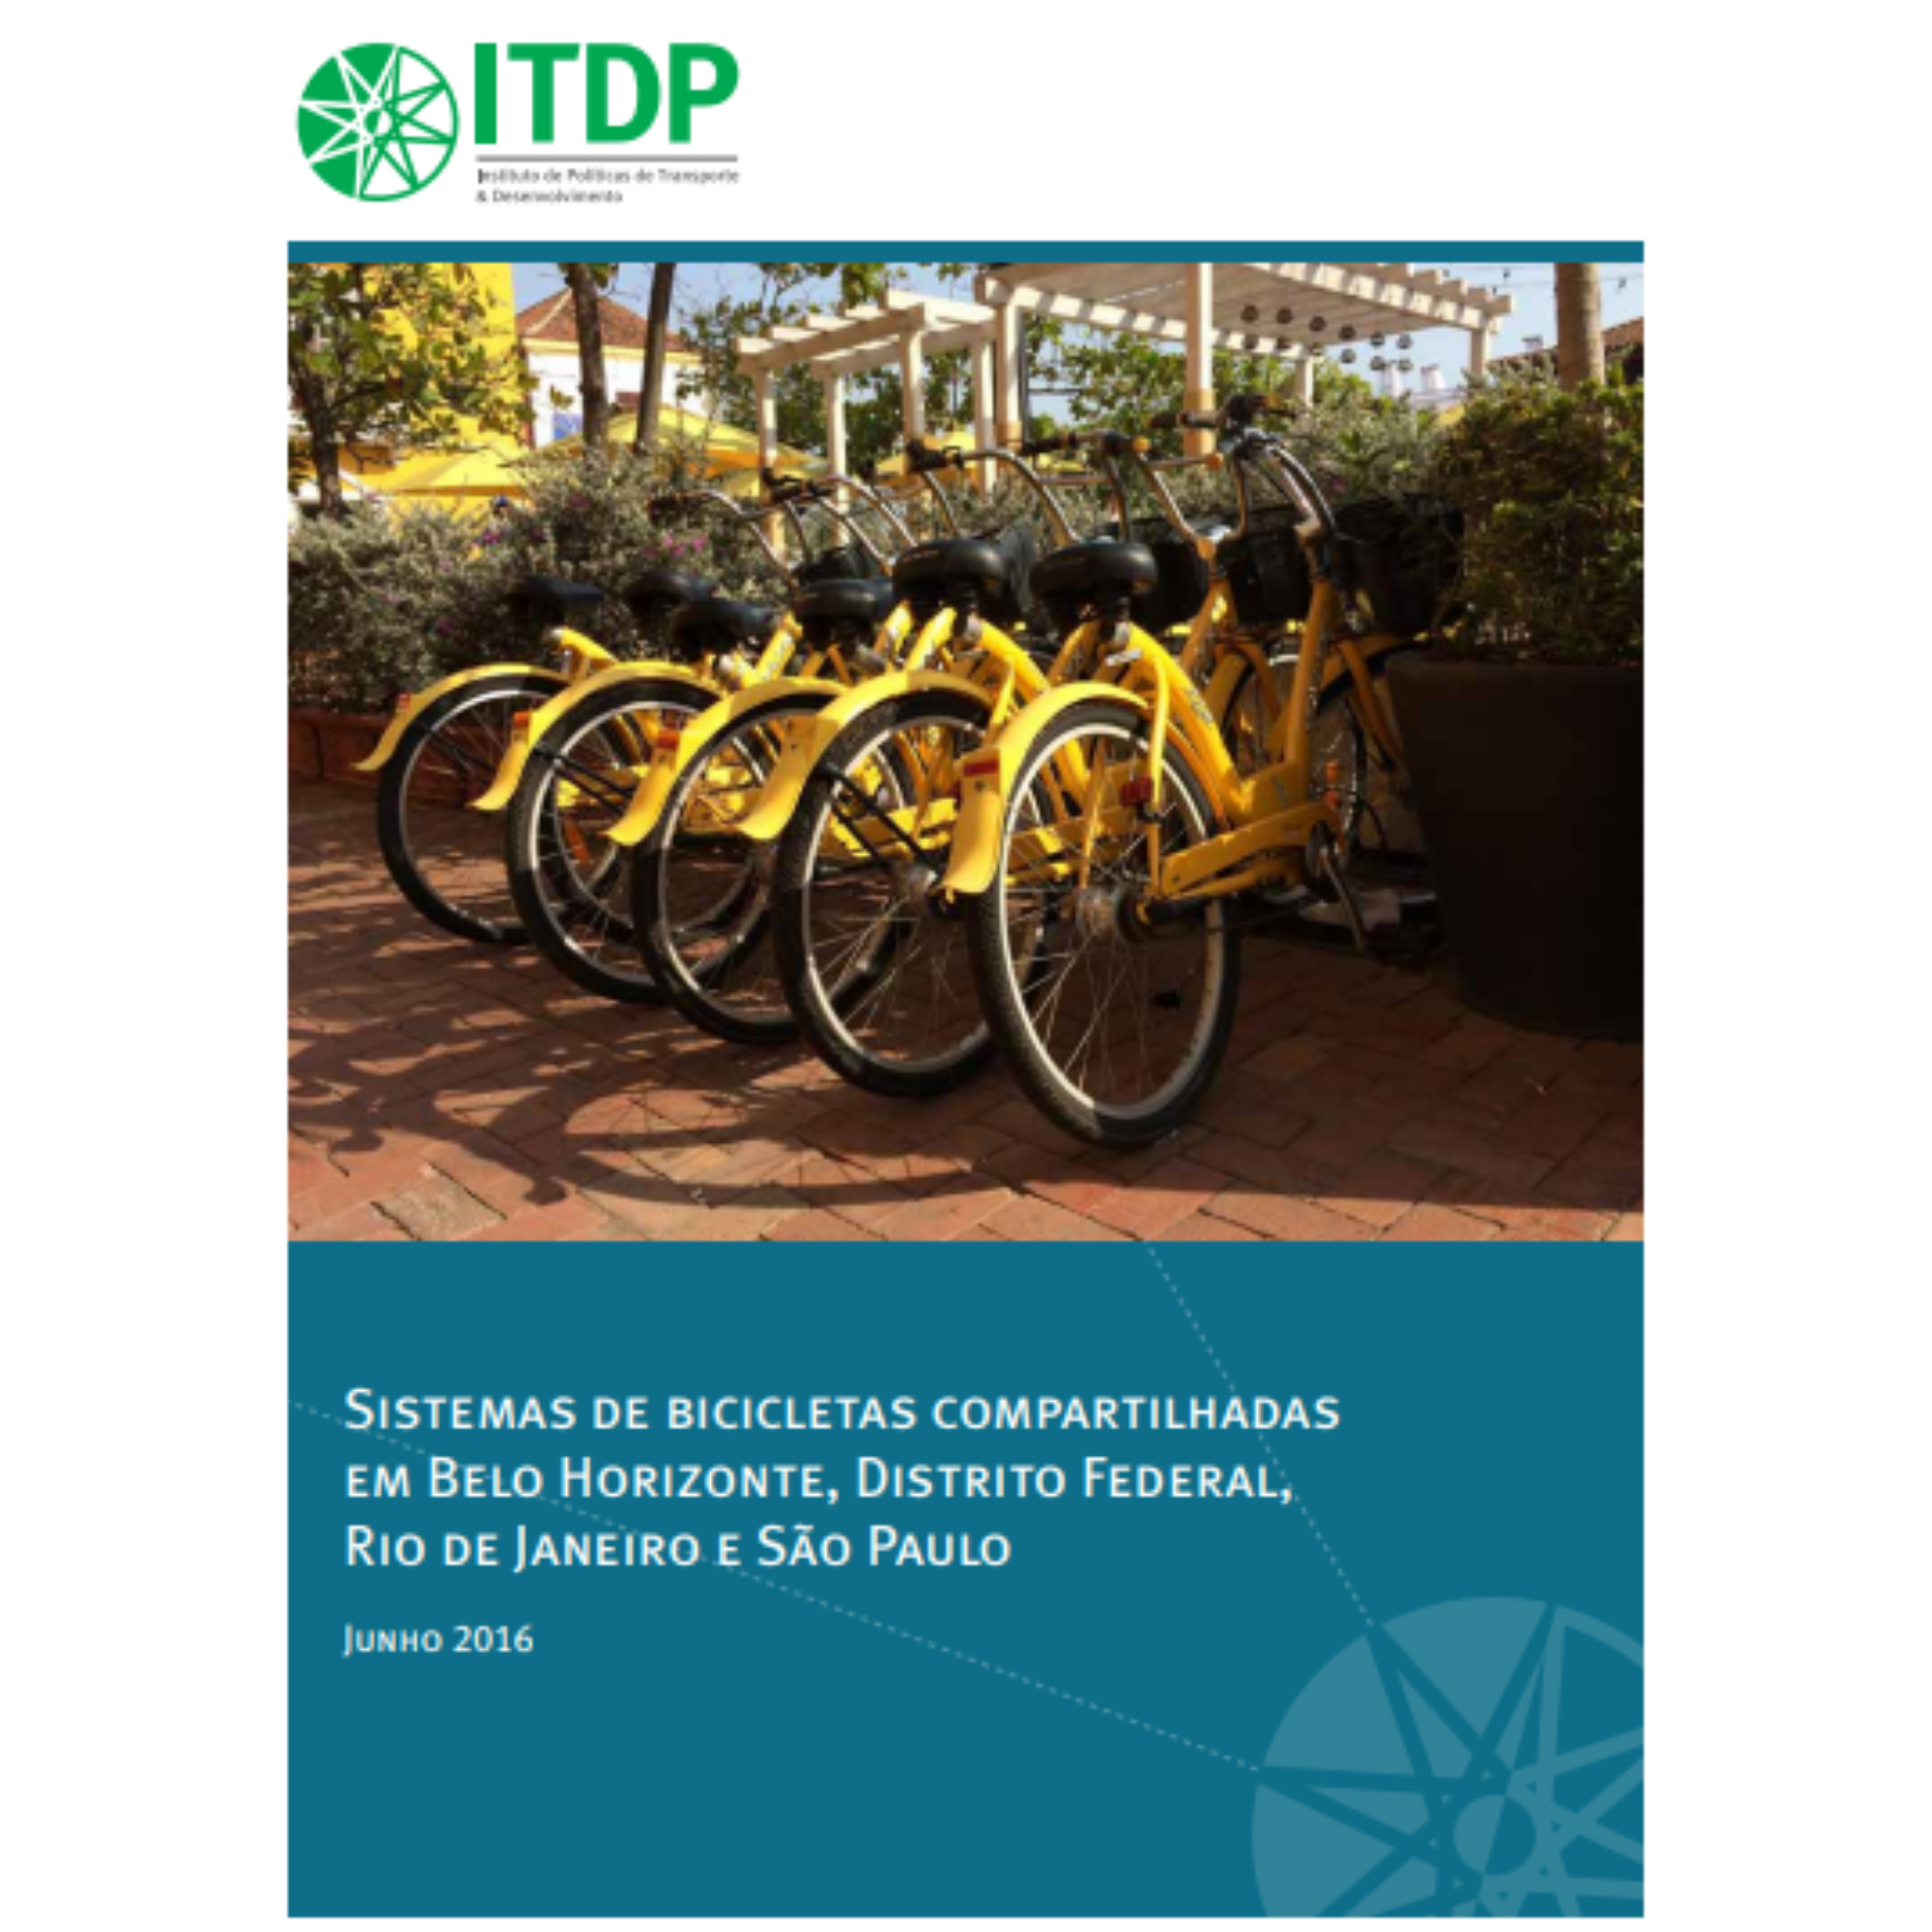 Sistemas de bicicletas compartilhadas em Belo Horizonte, Distrito Federal, Rio de Janeiro e São Paulo